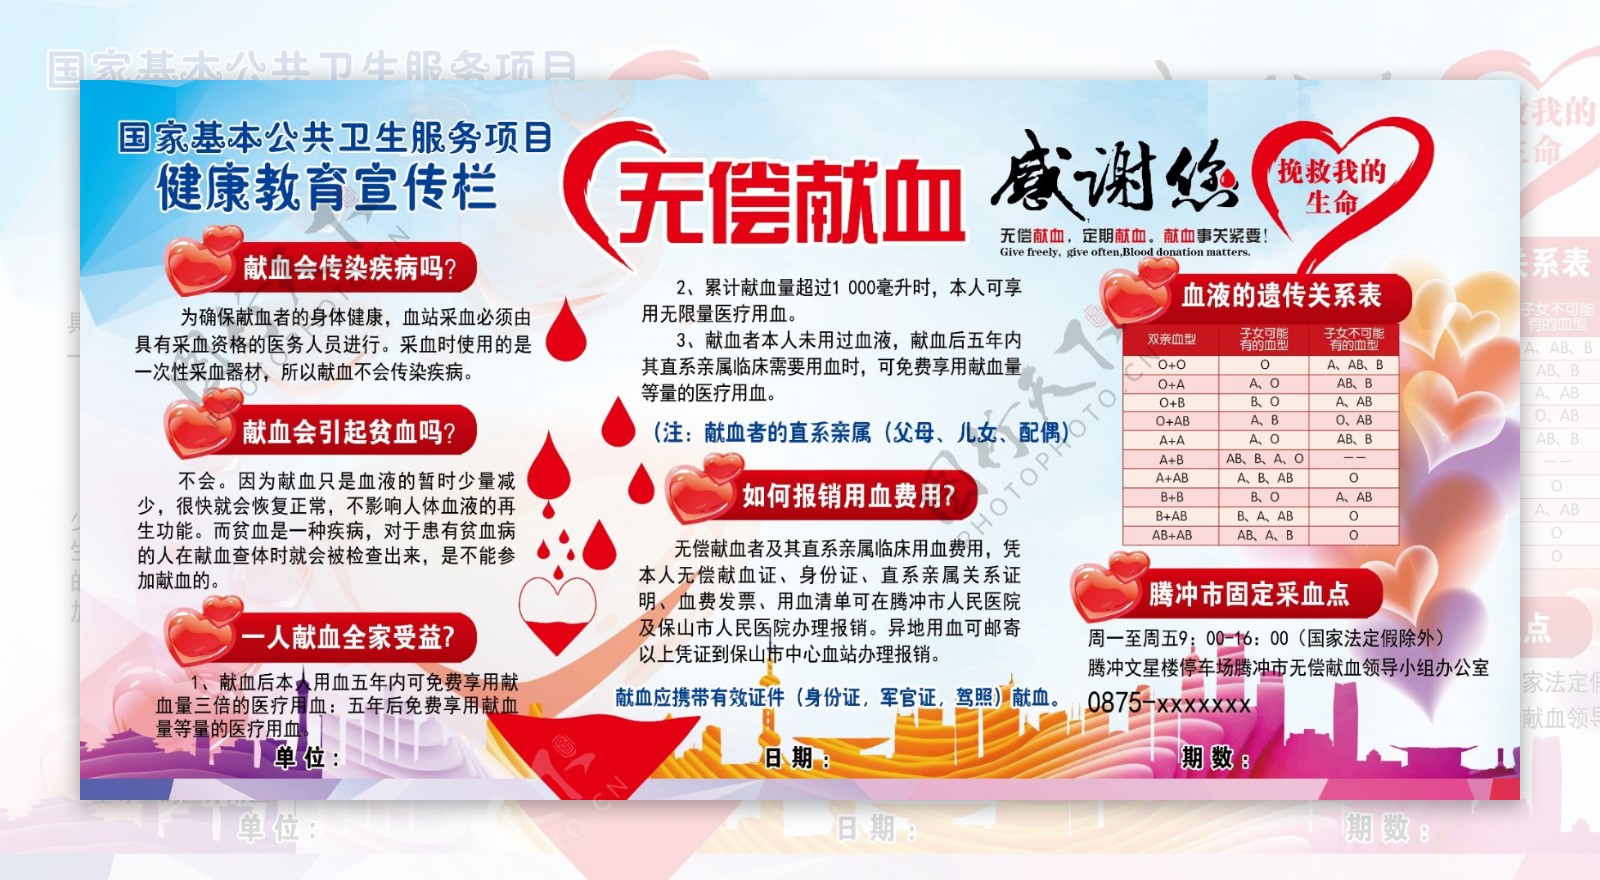 健康教育宣传栏无偿献血